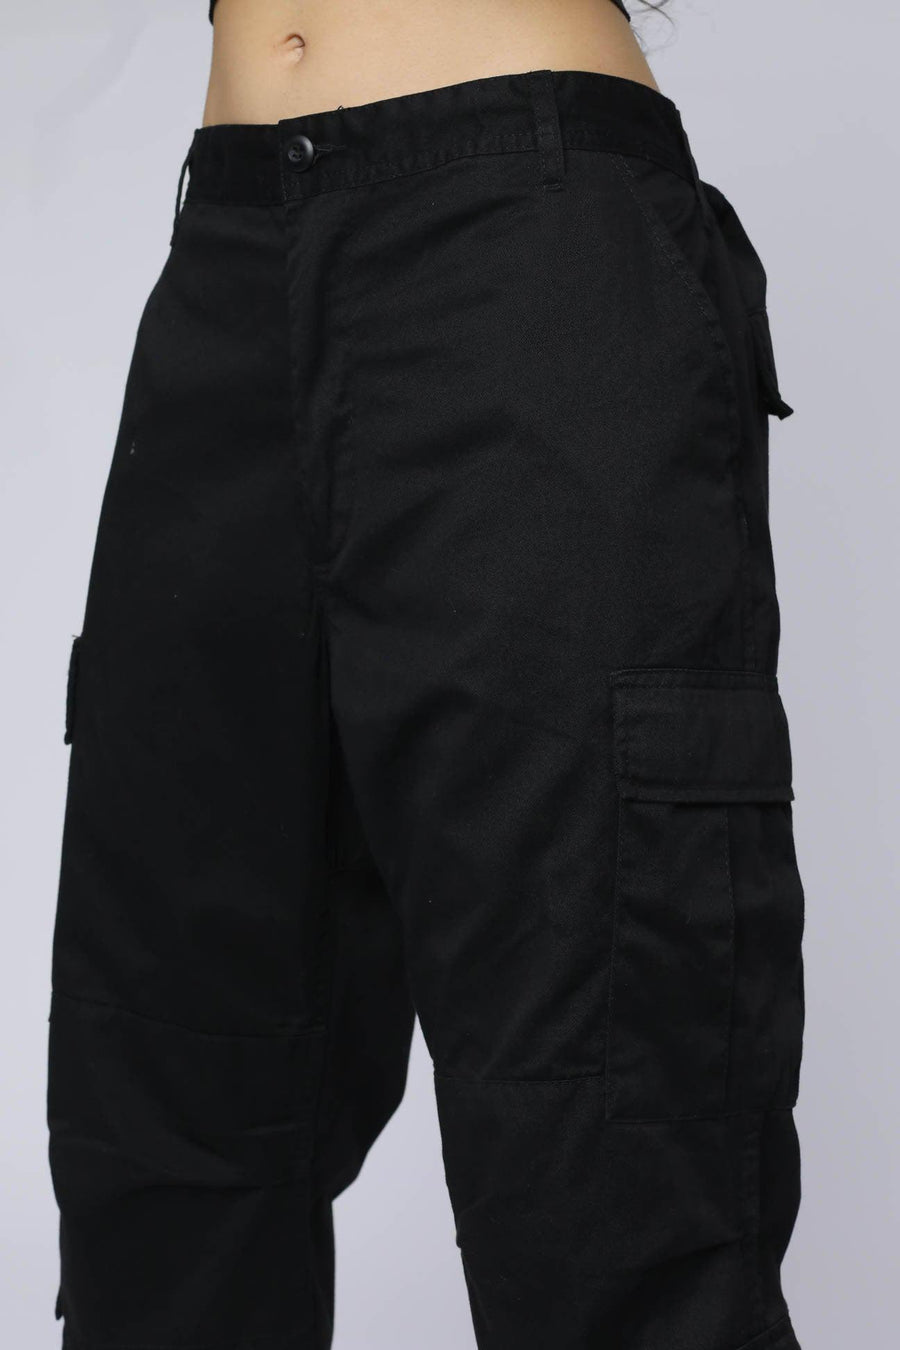 Black BDU Pants - L, 2XL